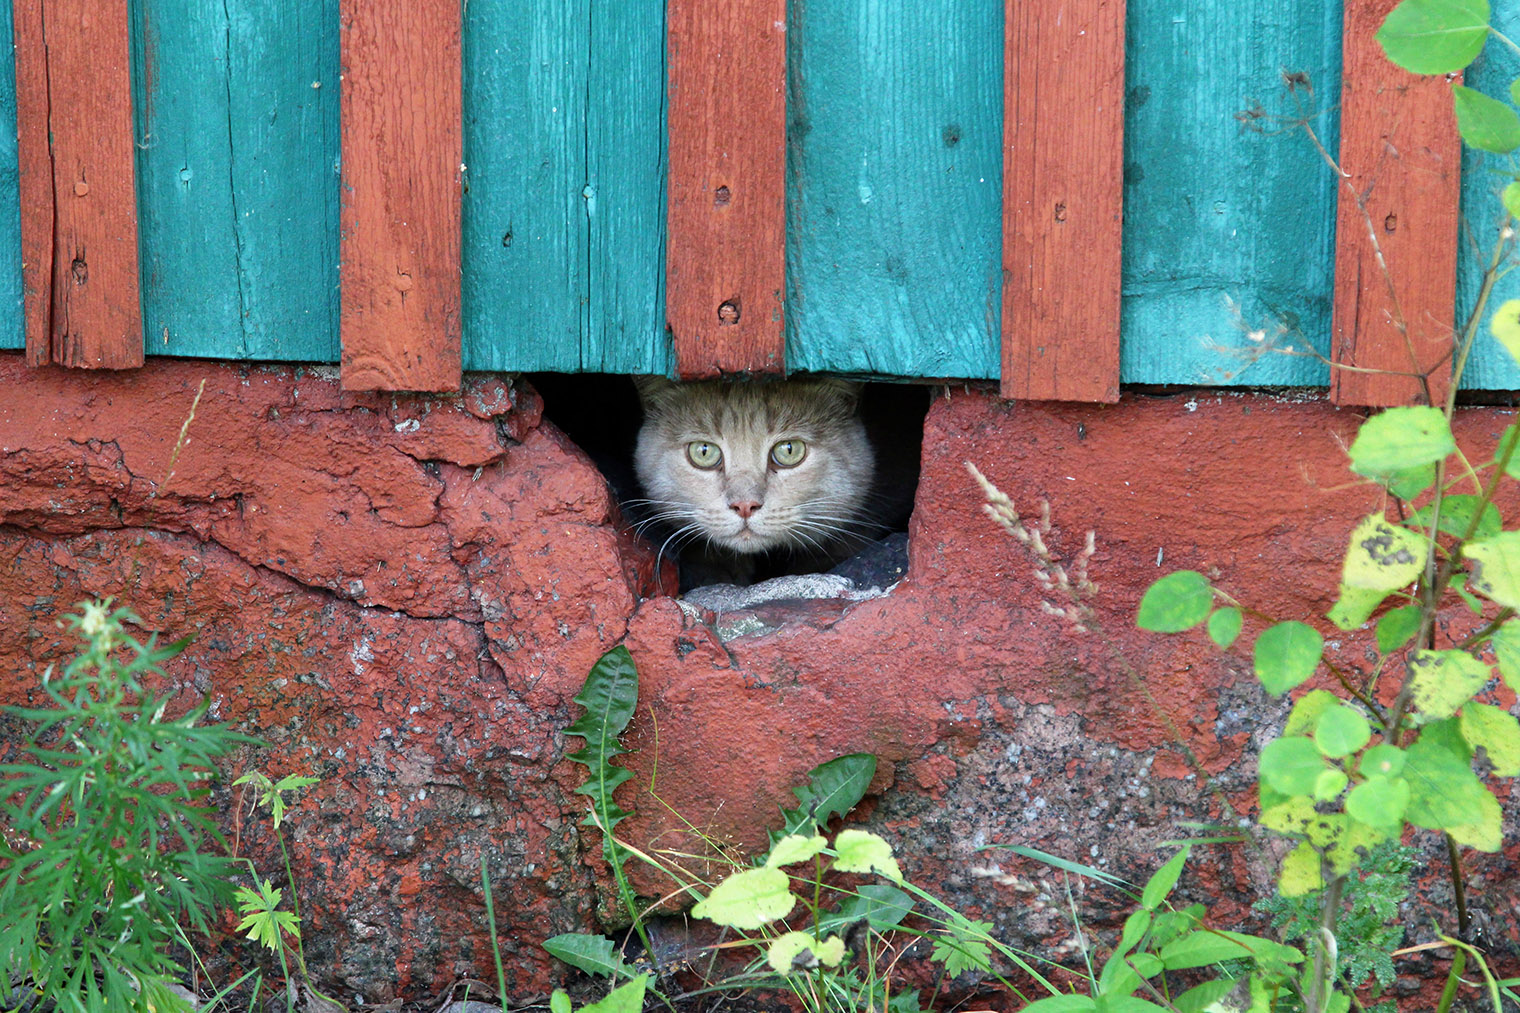 Достать кошку из такого укрытия вряд ли получится — постарайтесь сделать так, чтобы животное вышло добровольно, или обратитесь к ловцу. Фотография: semper⁠-⁠scifi / Shutterstock / FOTODOM